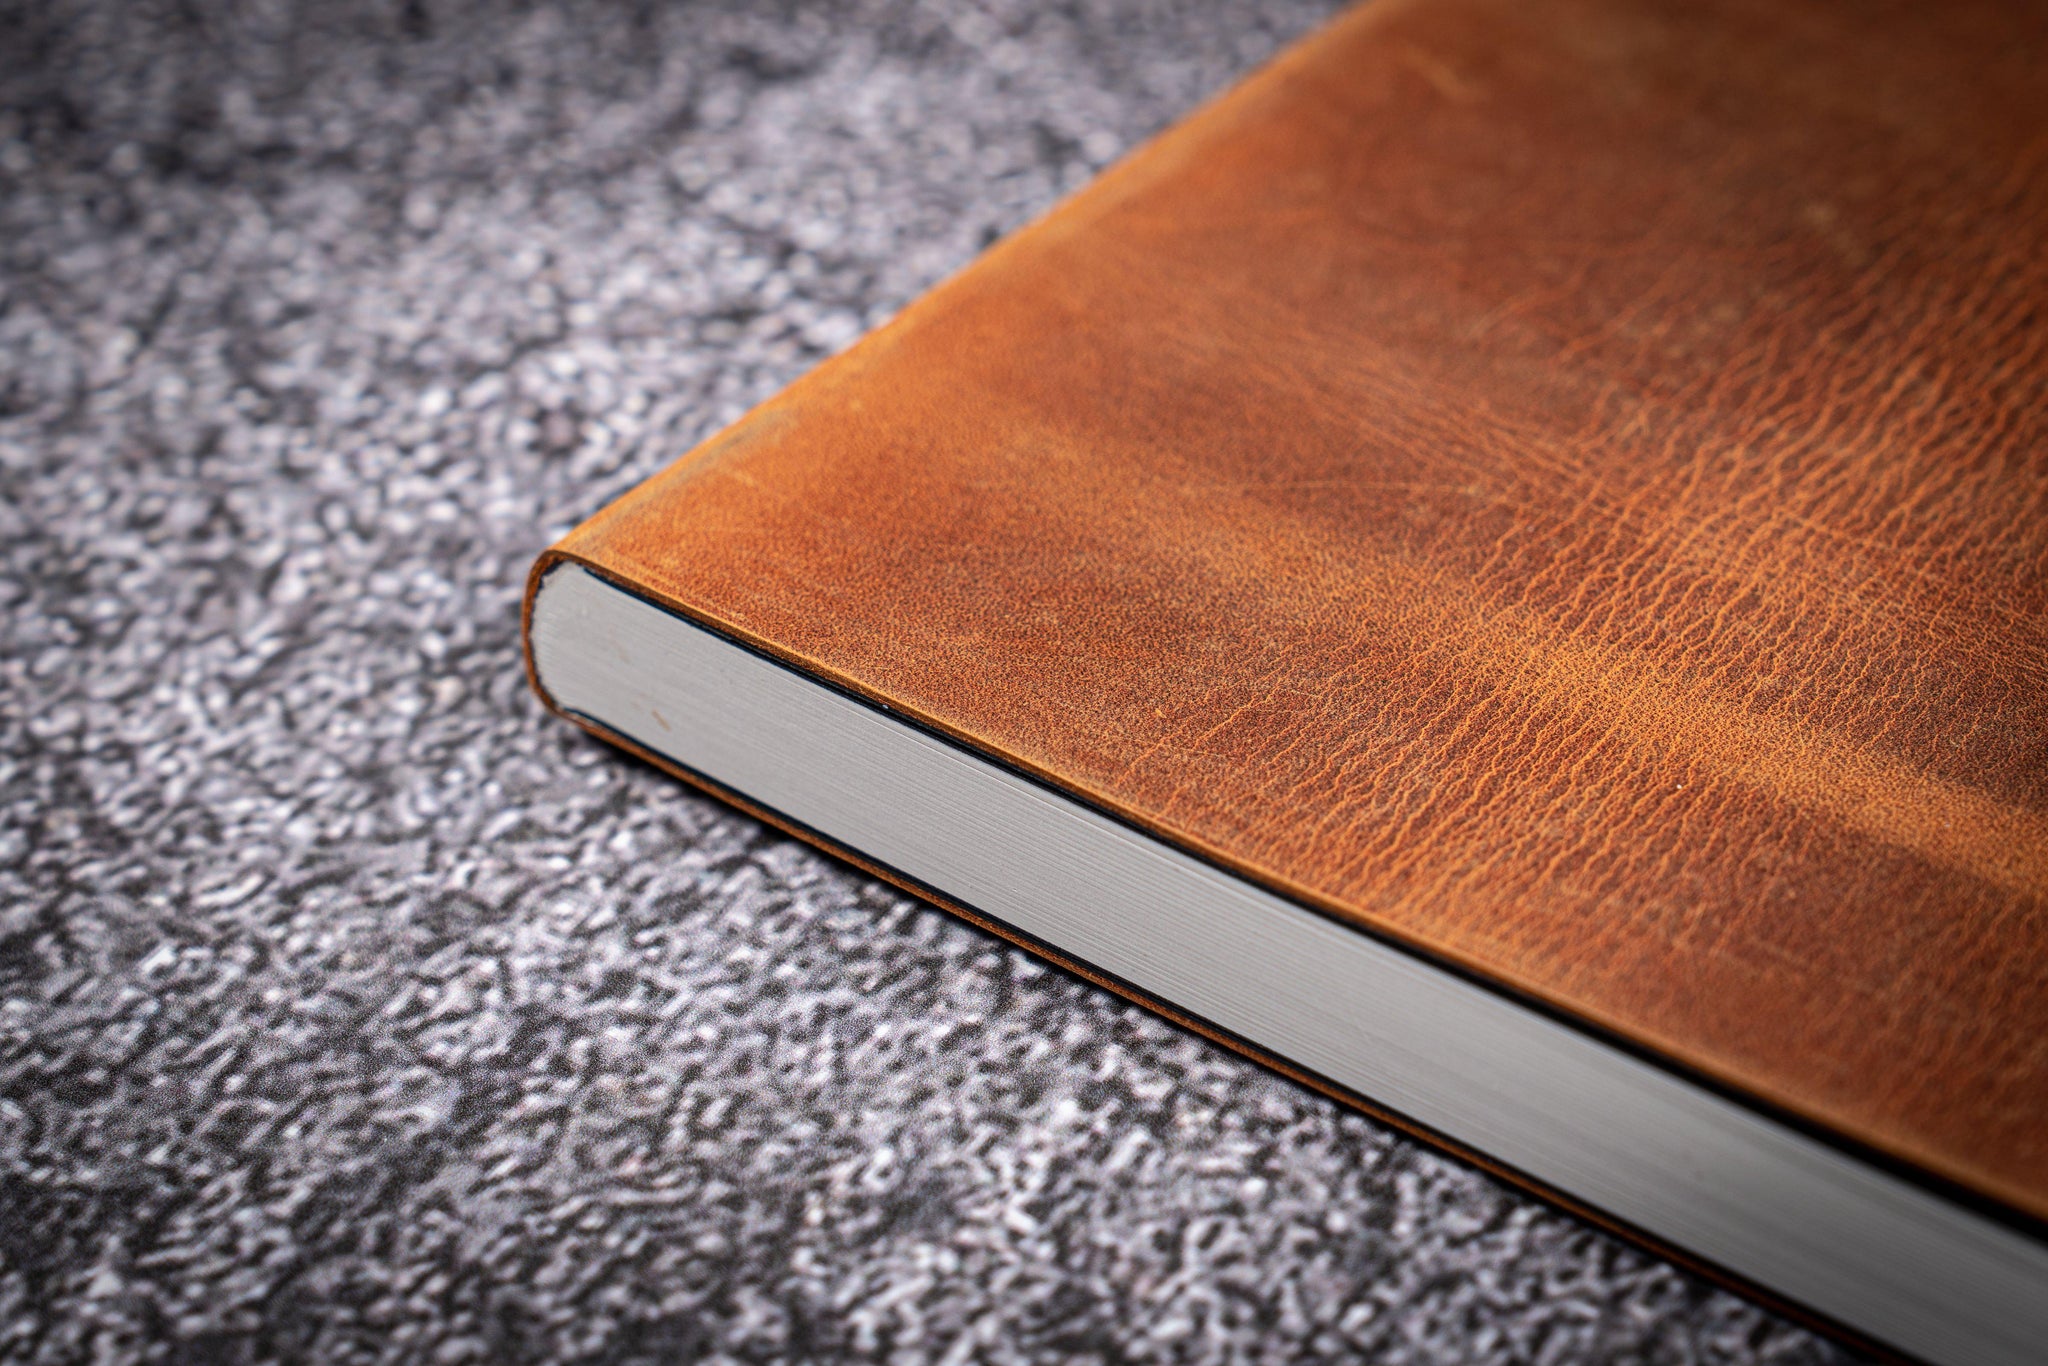 Brown leather journal, magic grimoire - Ouroboros – TeoStudio